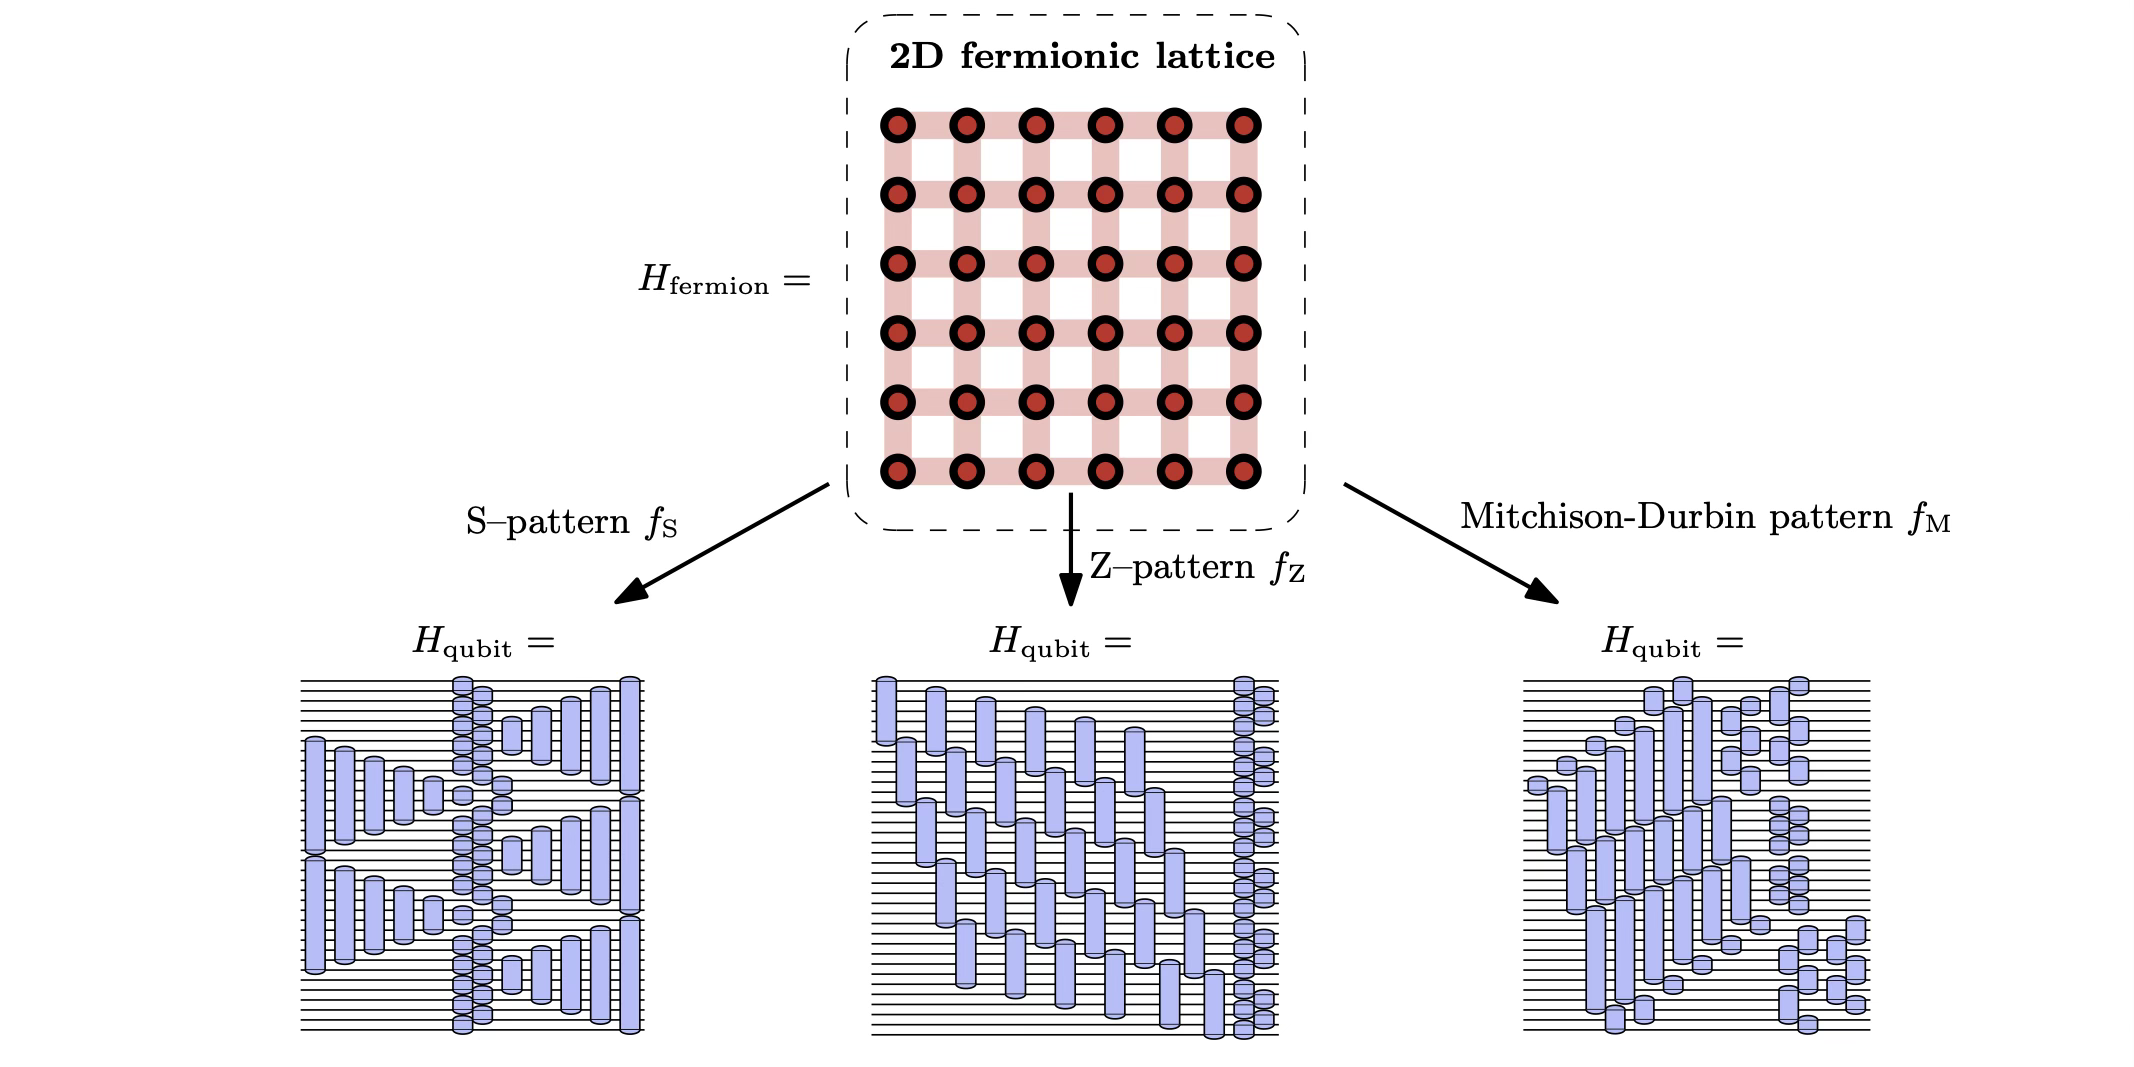 Het ontdekken van optimale fermion-qubit-toewijzingen door middel van algoritmische opsomming